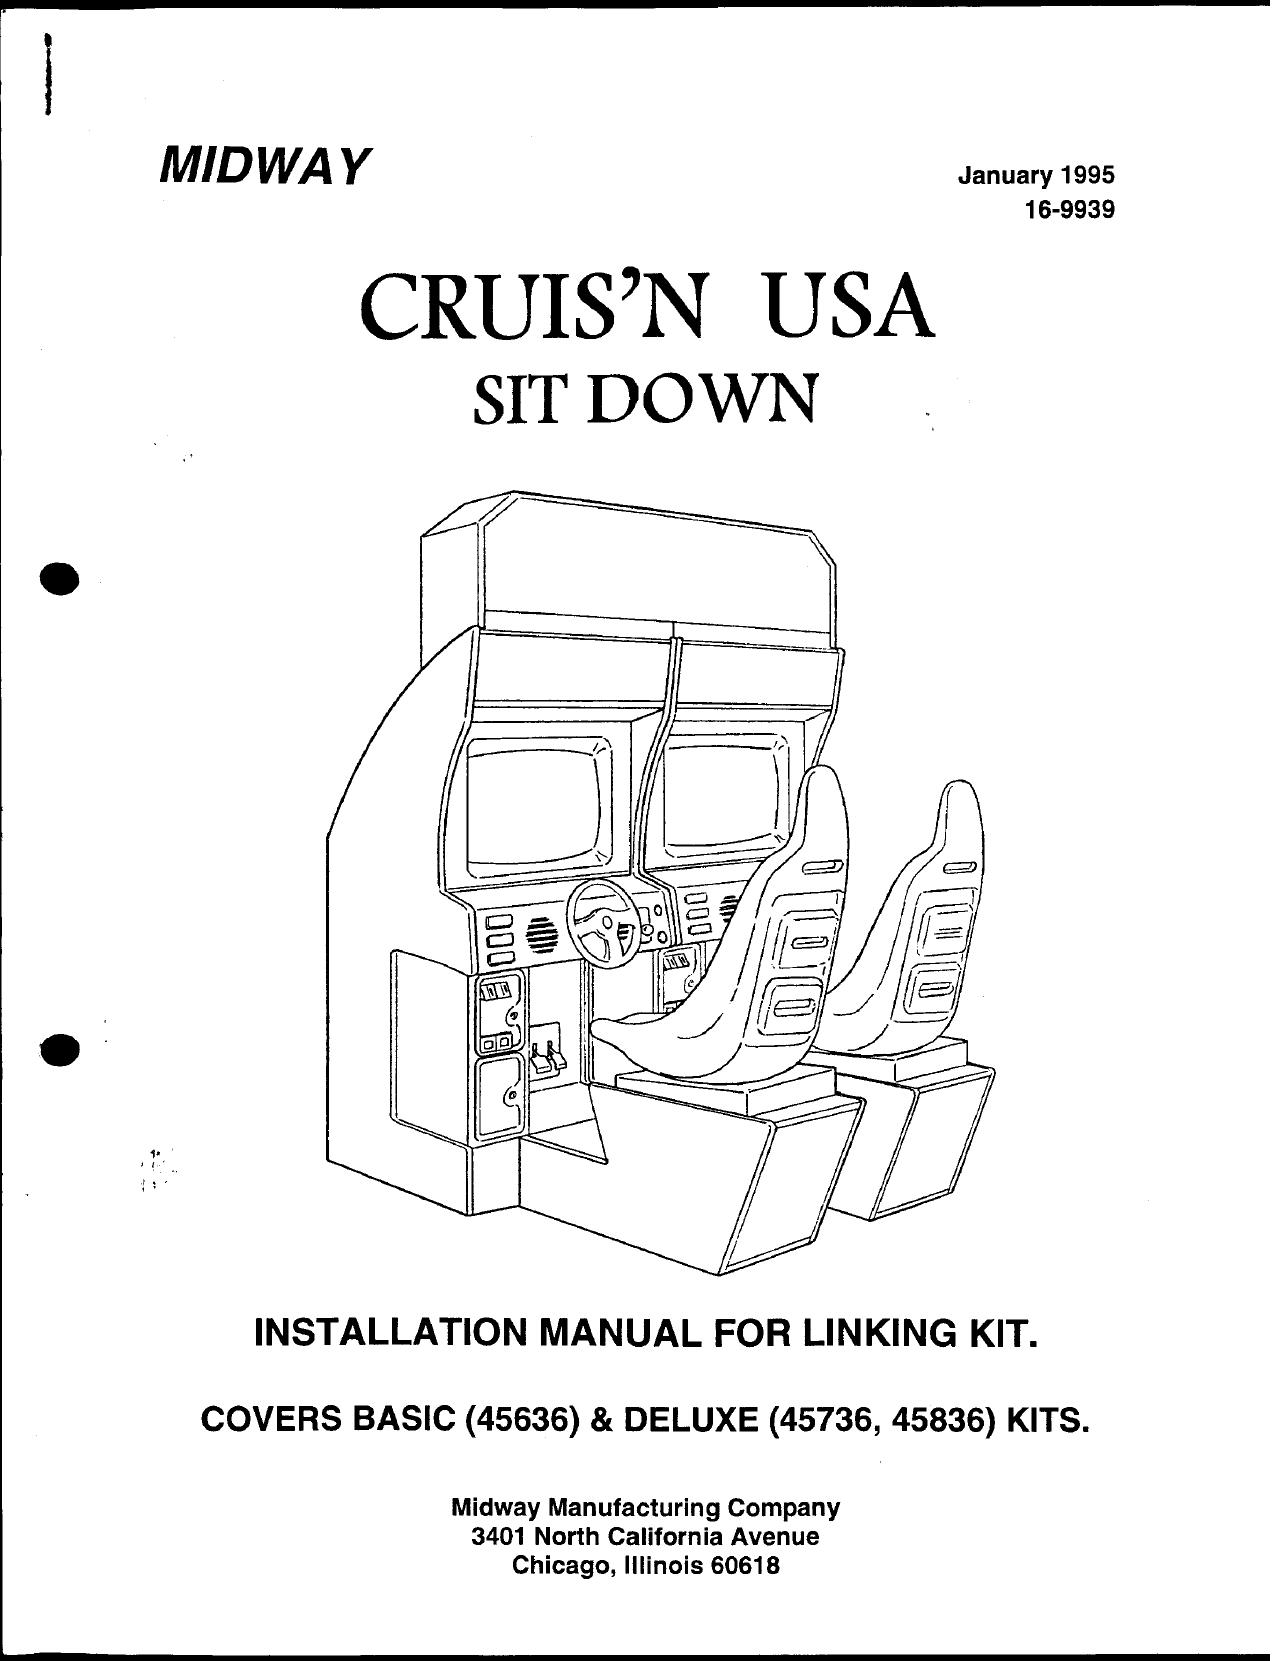 Cruis'n USA Linking Kit